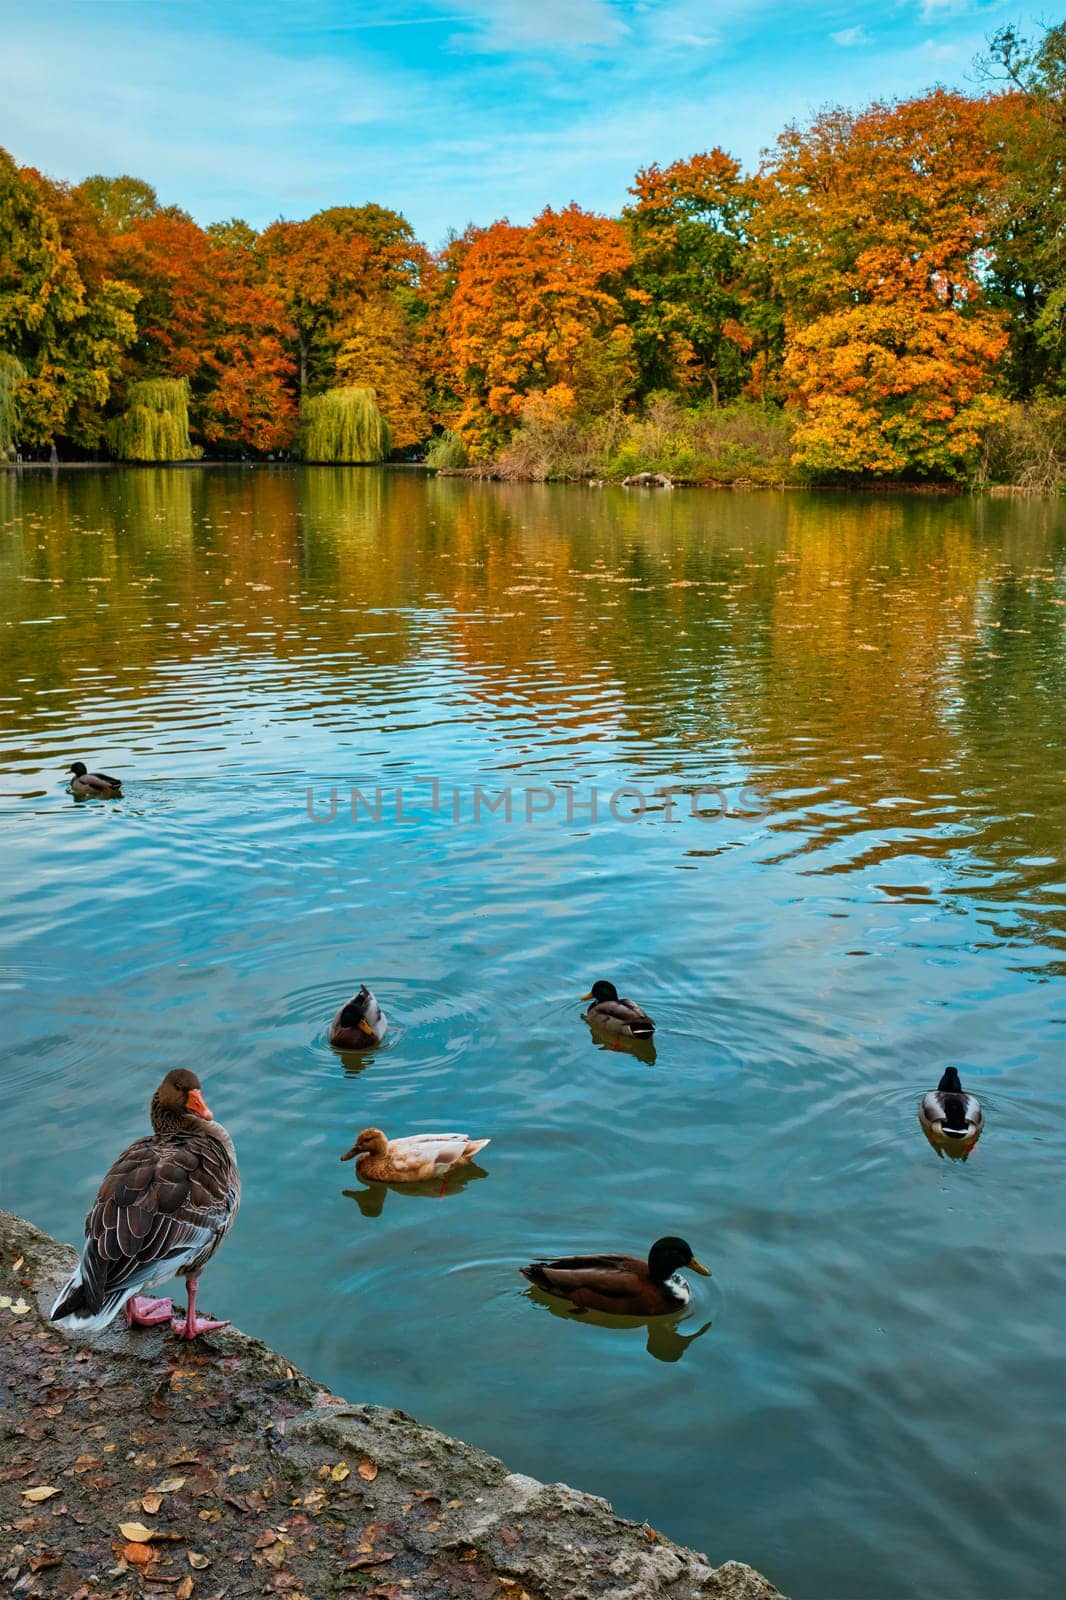 Ducks in a lake in Munich English garden Englischer garten park. Munchen, Bavaria, Germany by dimol